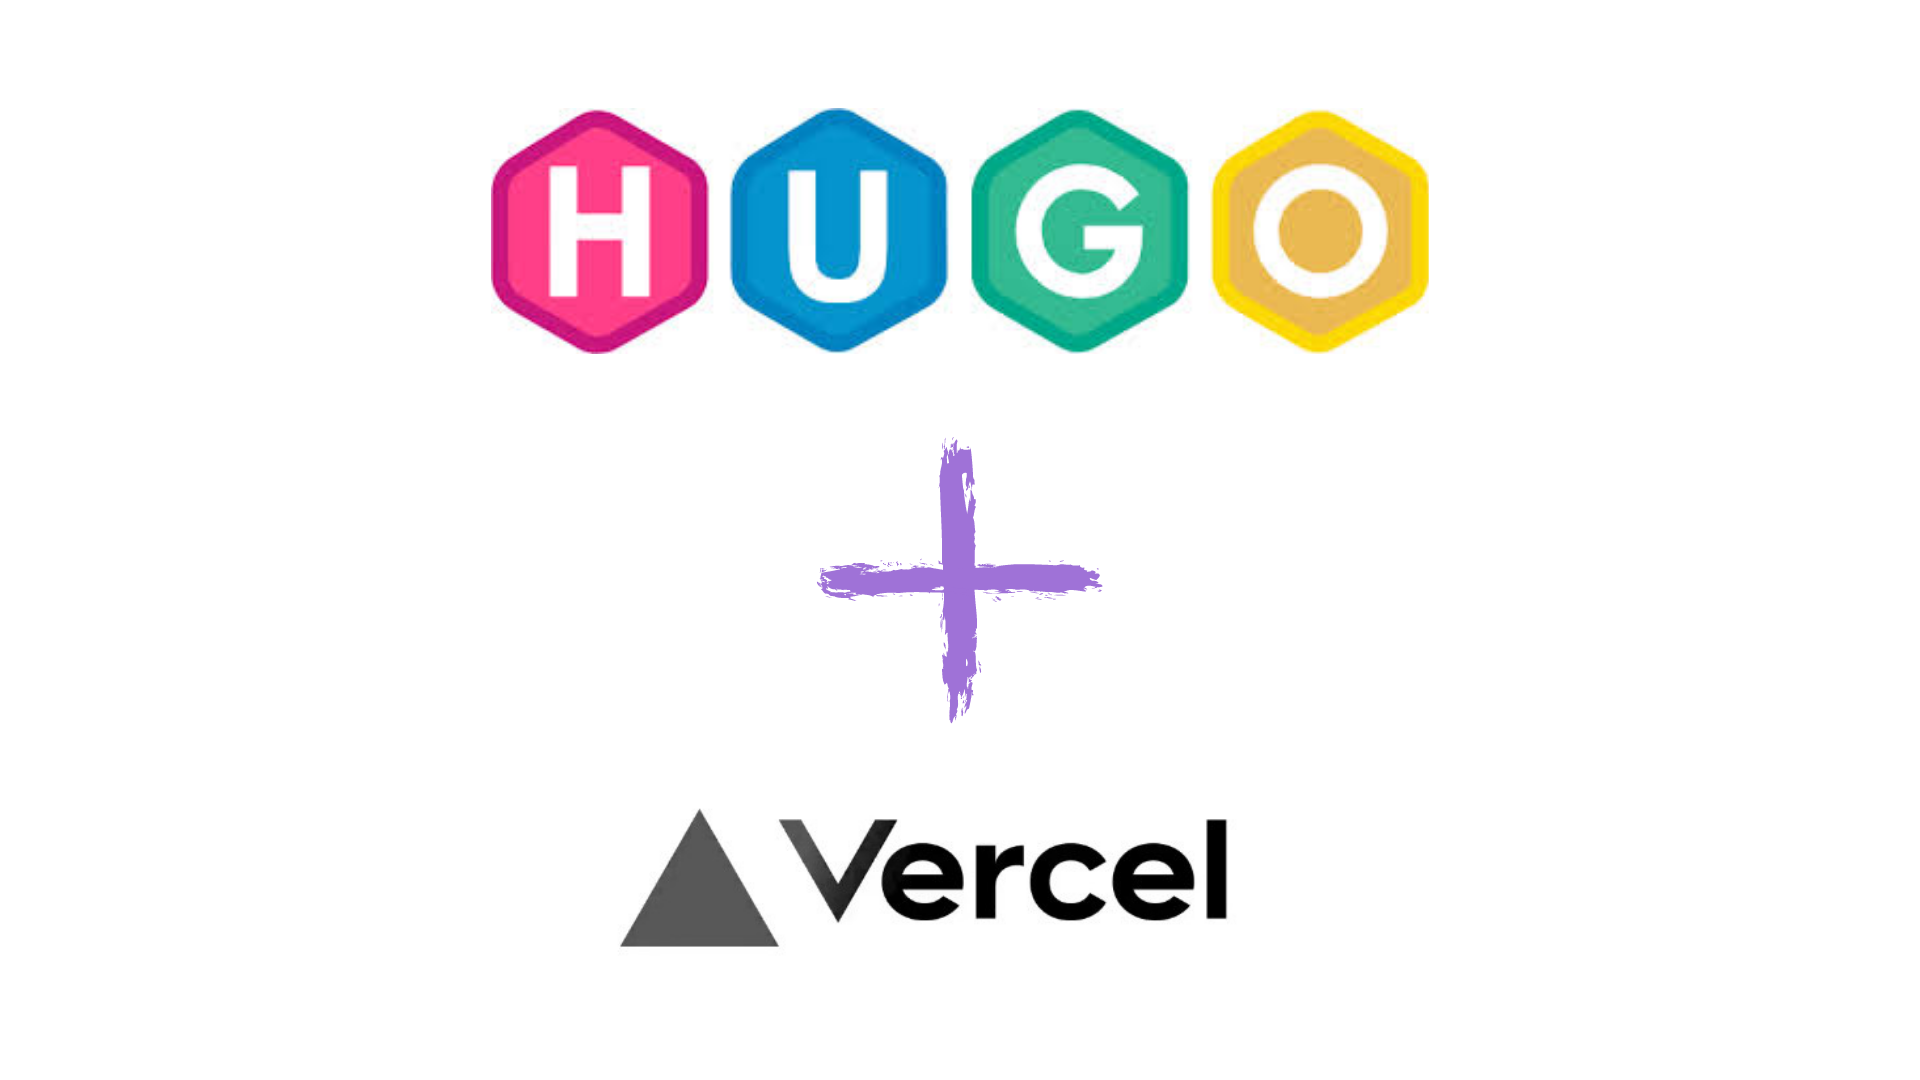 Hugo + Vercel